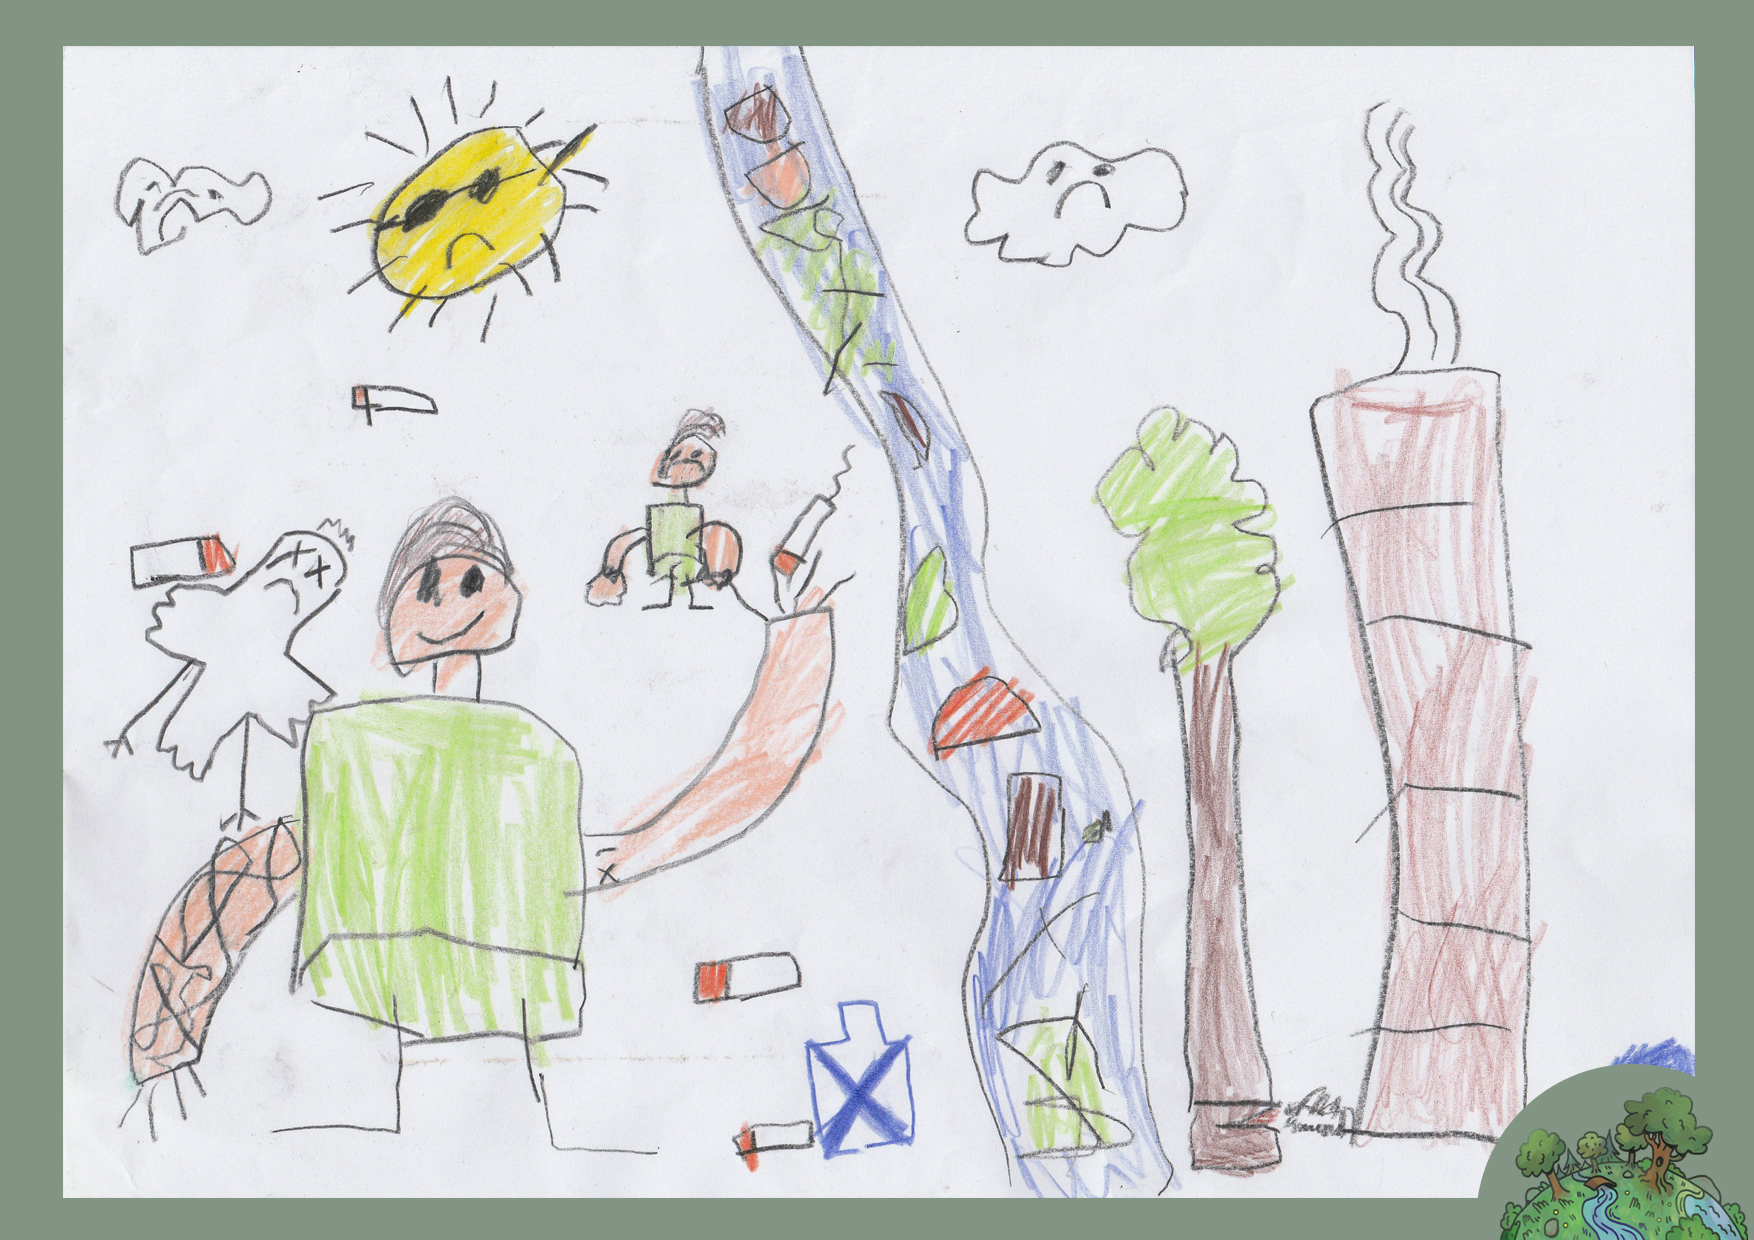 Nagy Arnold, 6 éves<br />A kép címe: Ne legyen környezetszennyezés!<br />Alkalmazott technika: színes ceruza